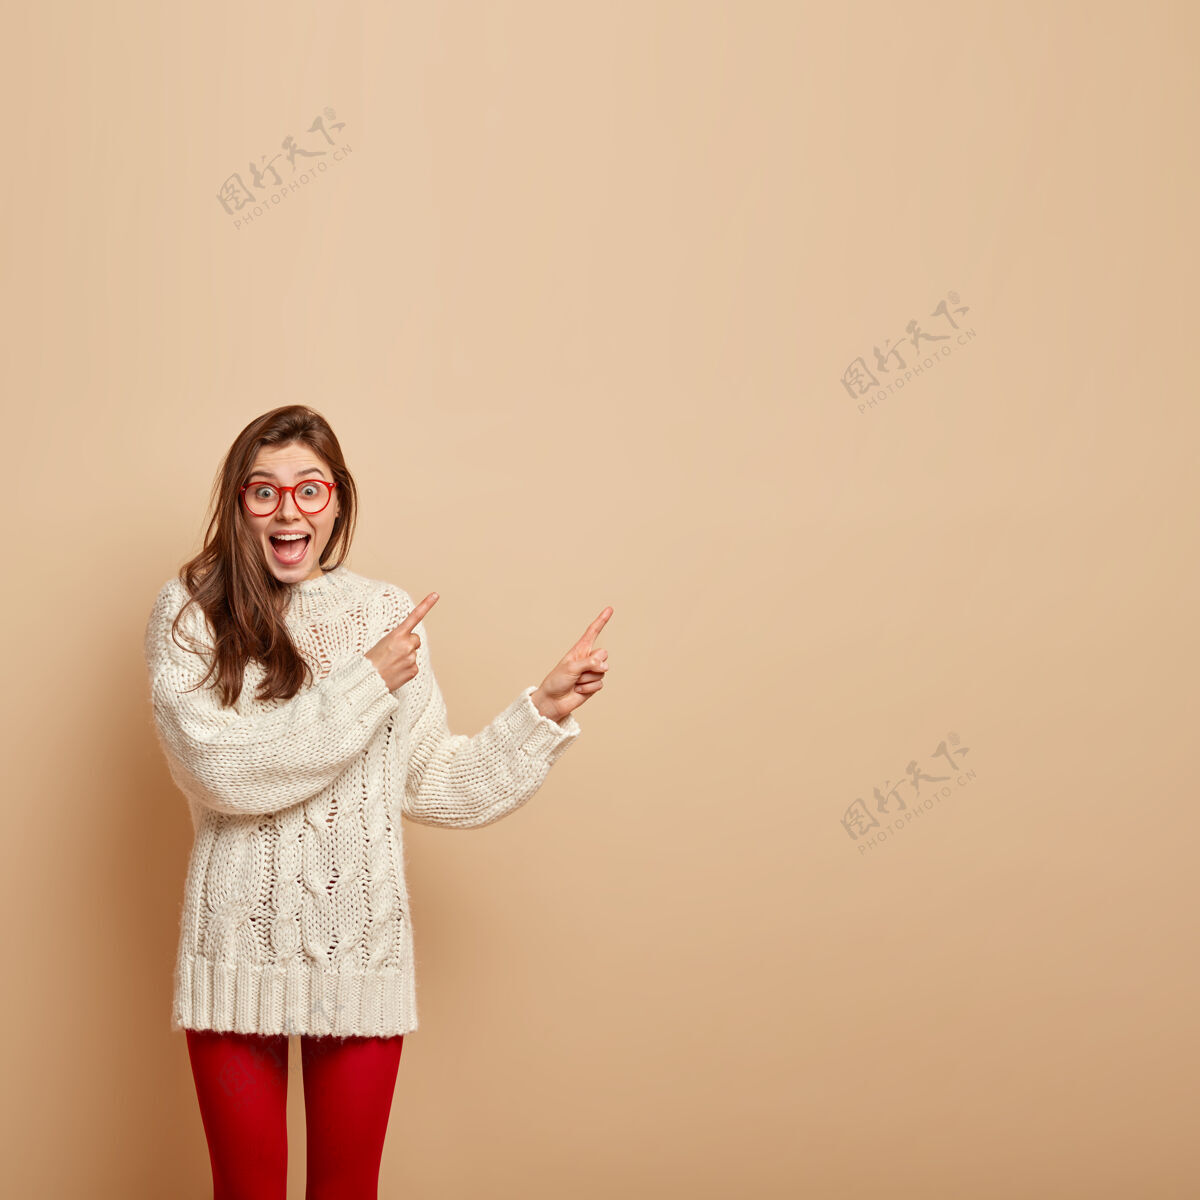 青少年喜怒无常的情绪少女形象 笑逐颜开 指着右上角 宣传酷品 穿白色毛衣 隔着米色的墙休闲满意微笑